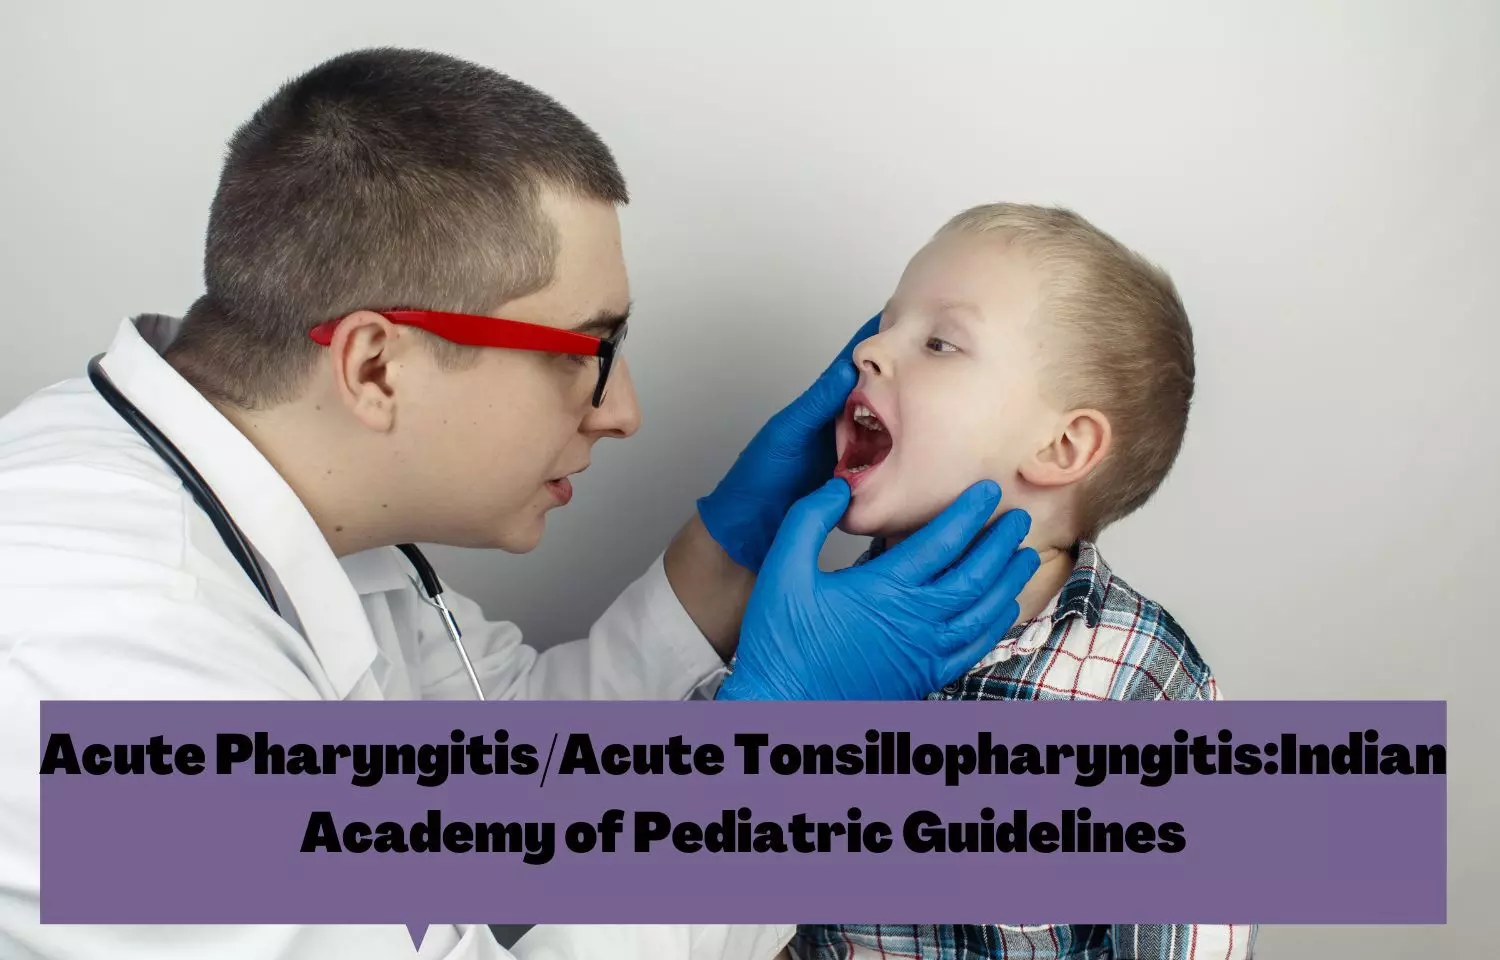 Acute Pharyngitis/Acute Tonsillopharyngitis in Children: IAP Guidelines